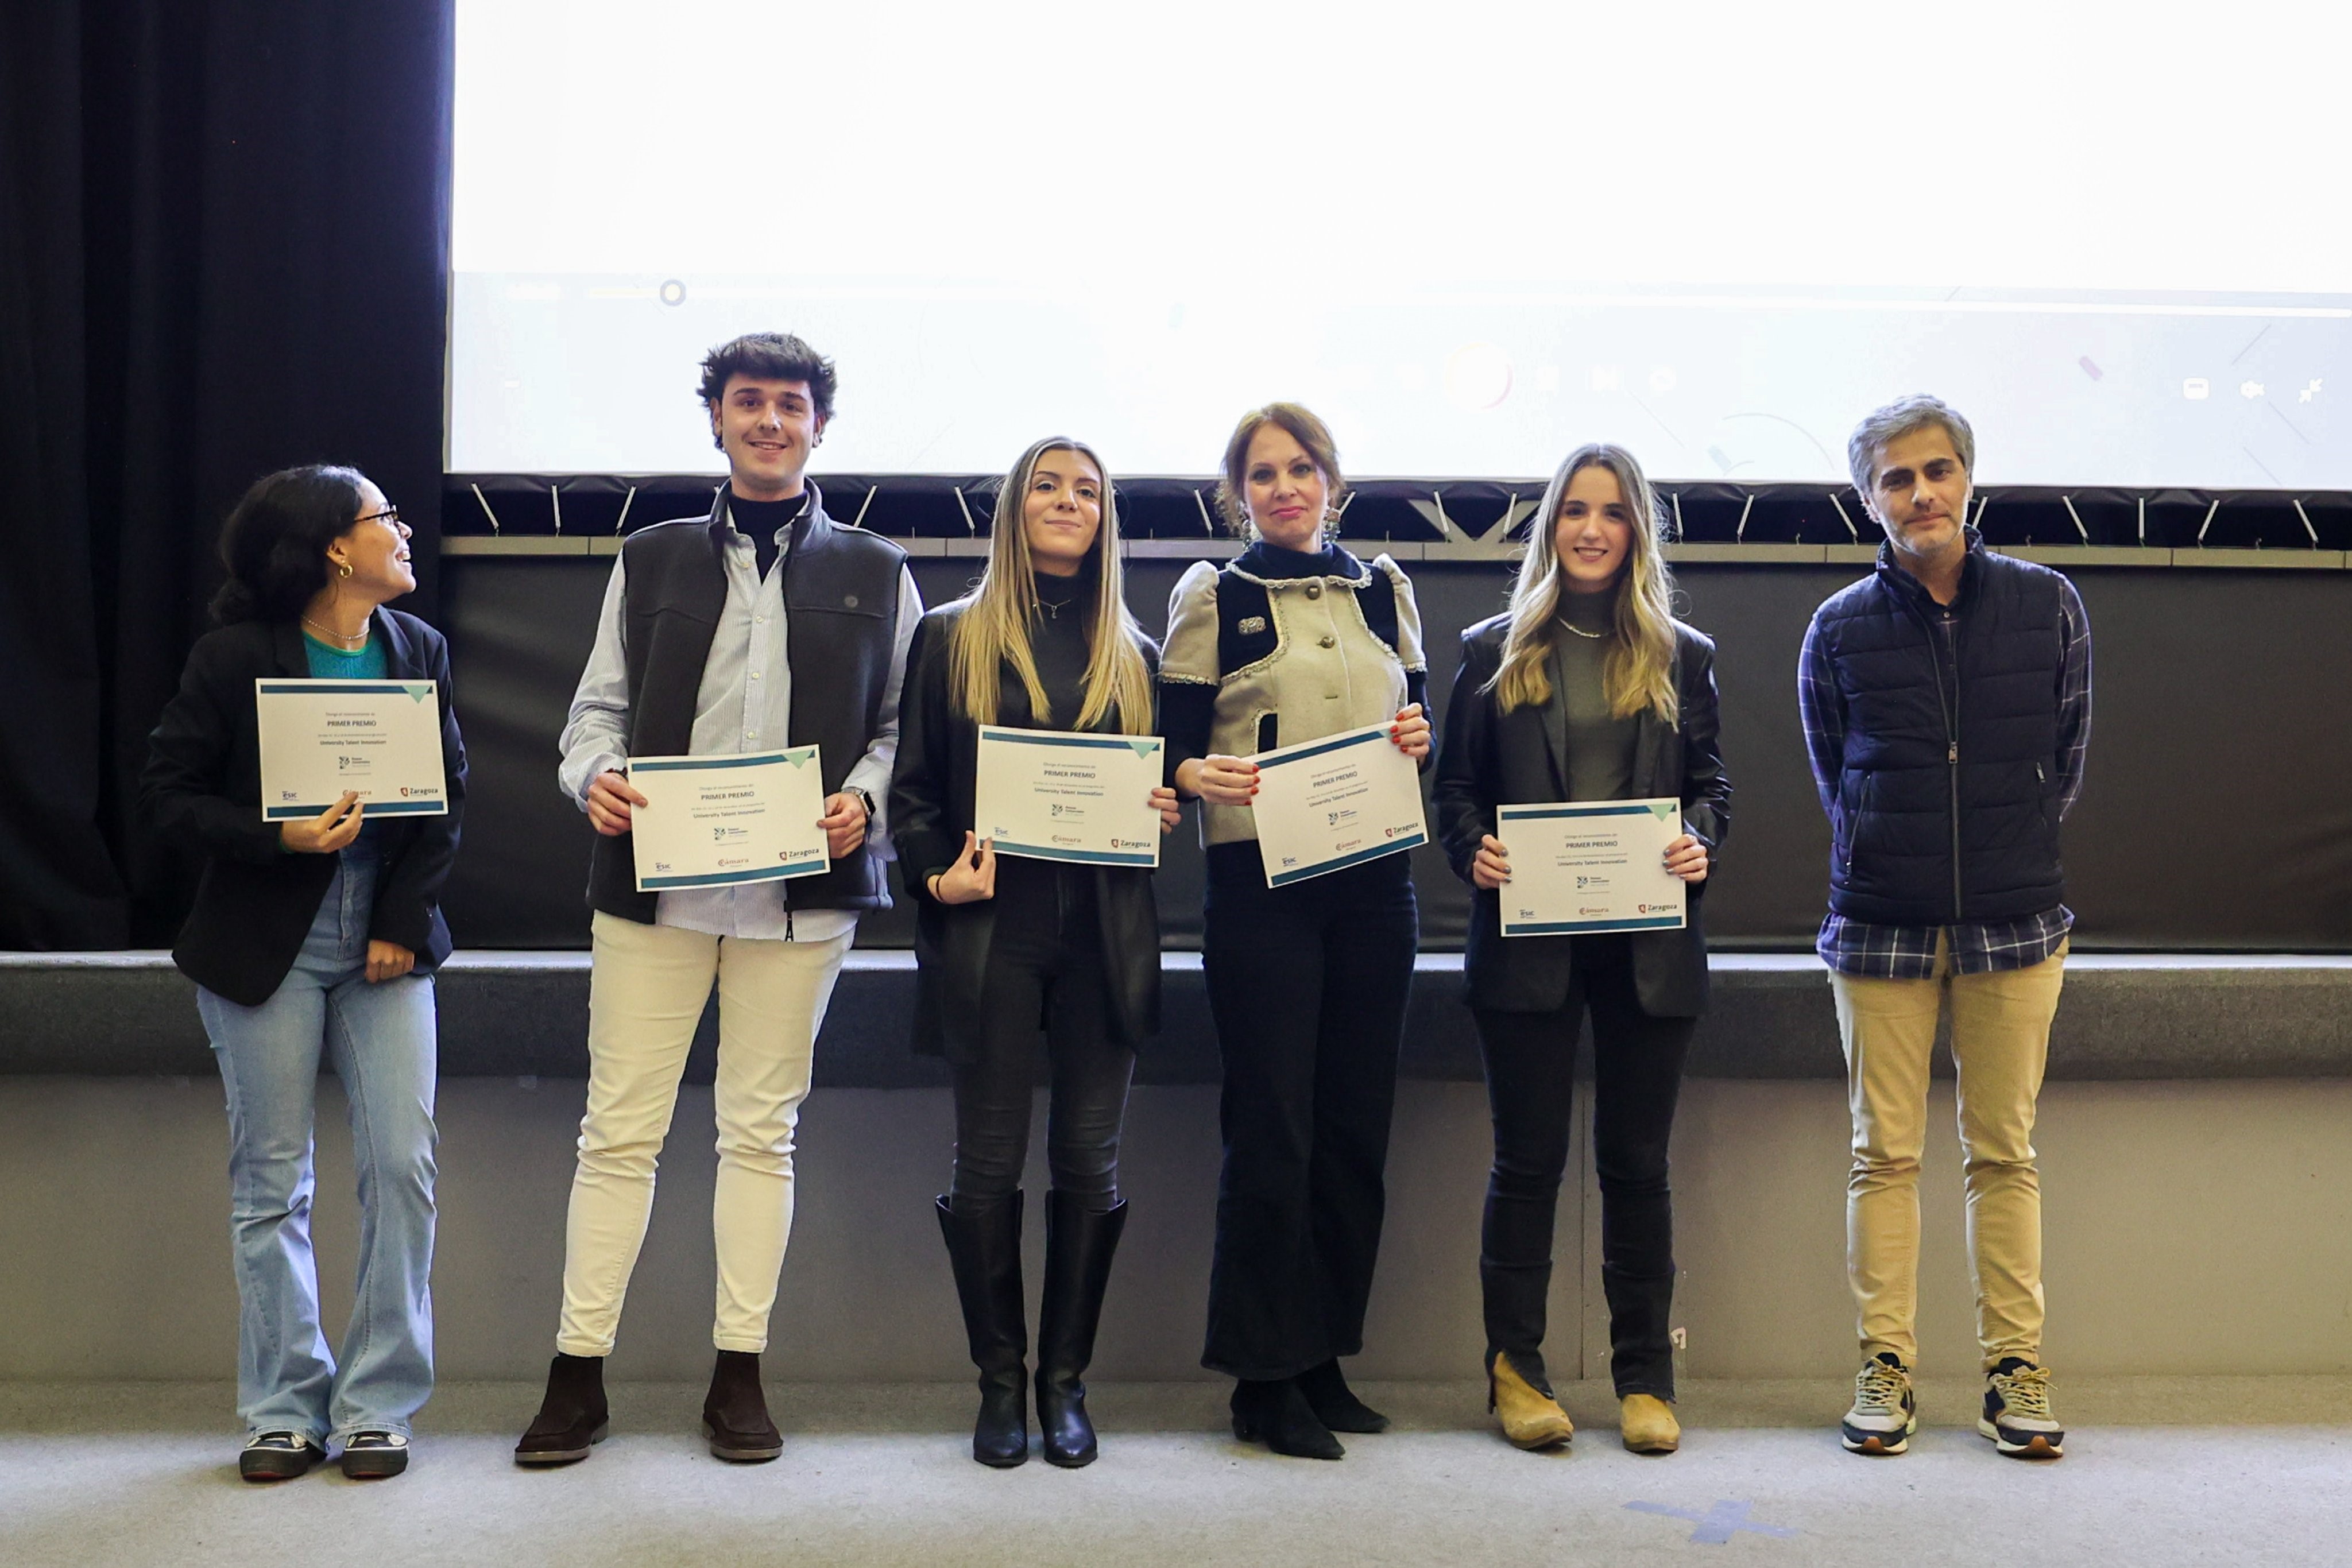 University Talent Innovation cierra su primera edición con una alta participación de estudiantes zaragozanos